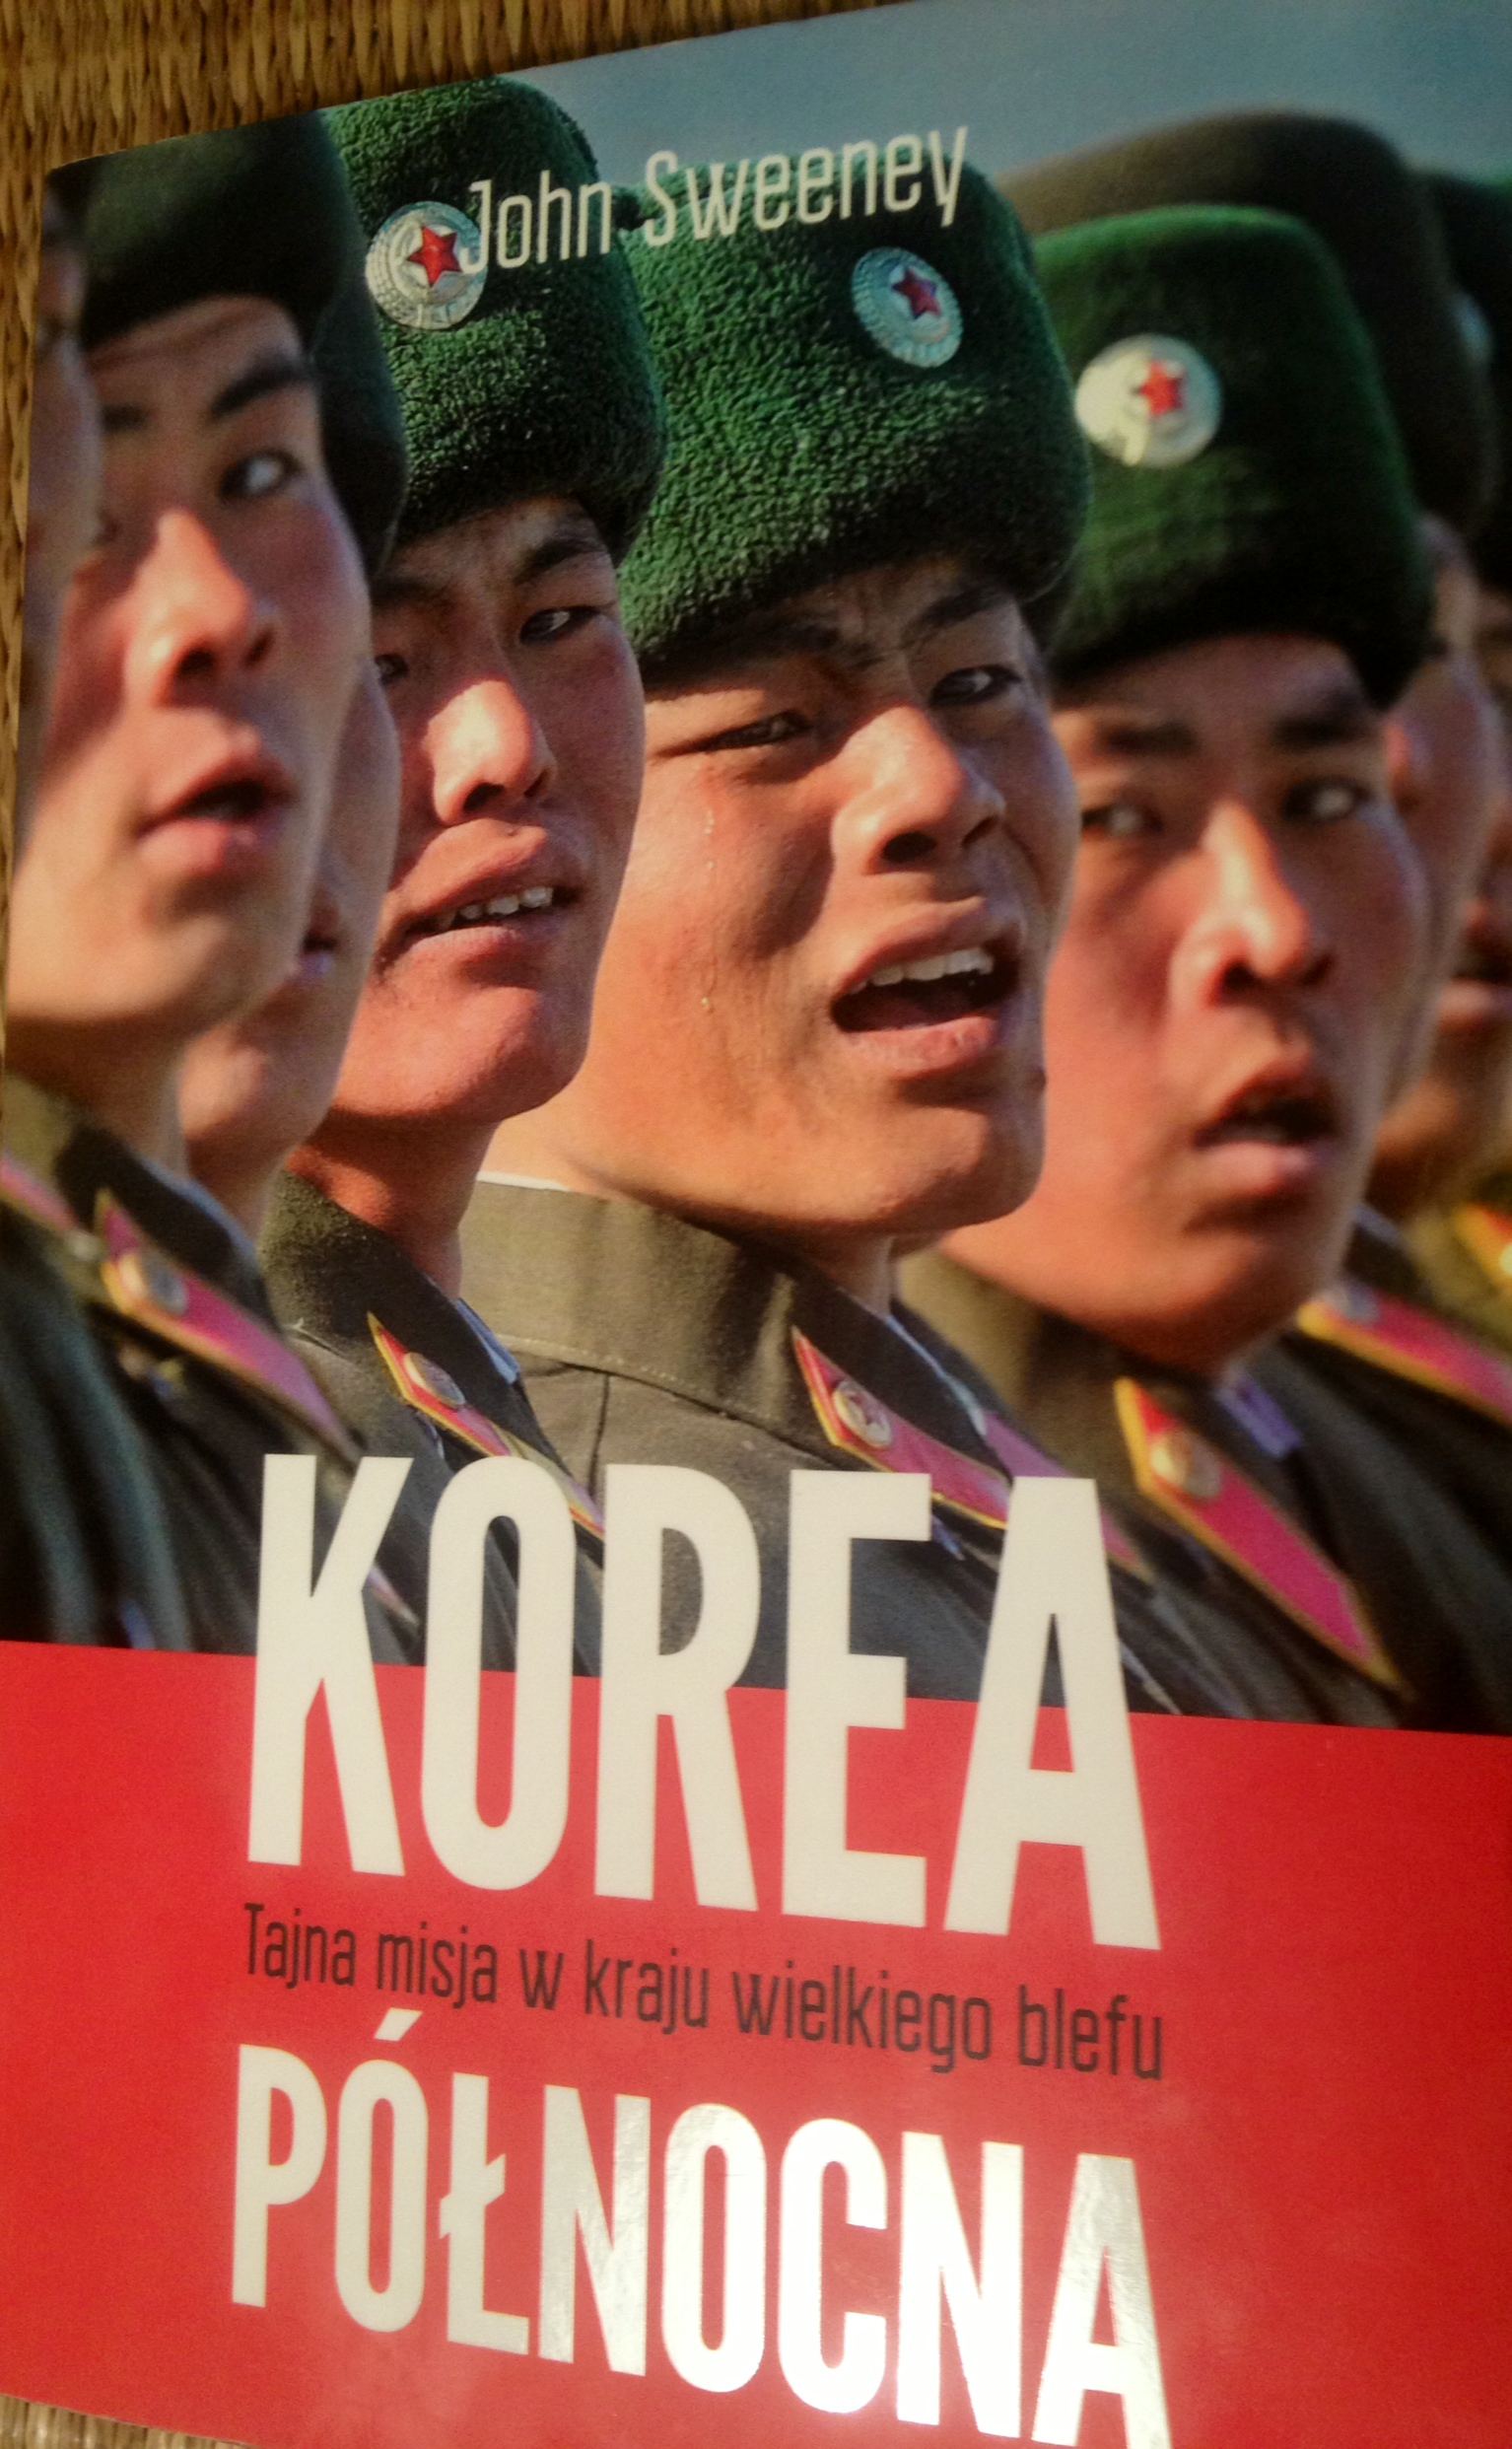 Korea Północna, Tajna misja w kraju wielkiego blefu, książka o Korei Północnej